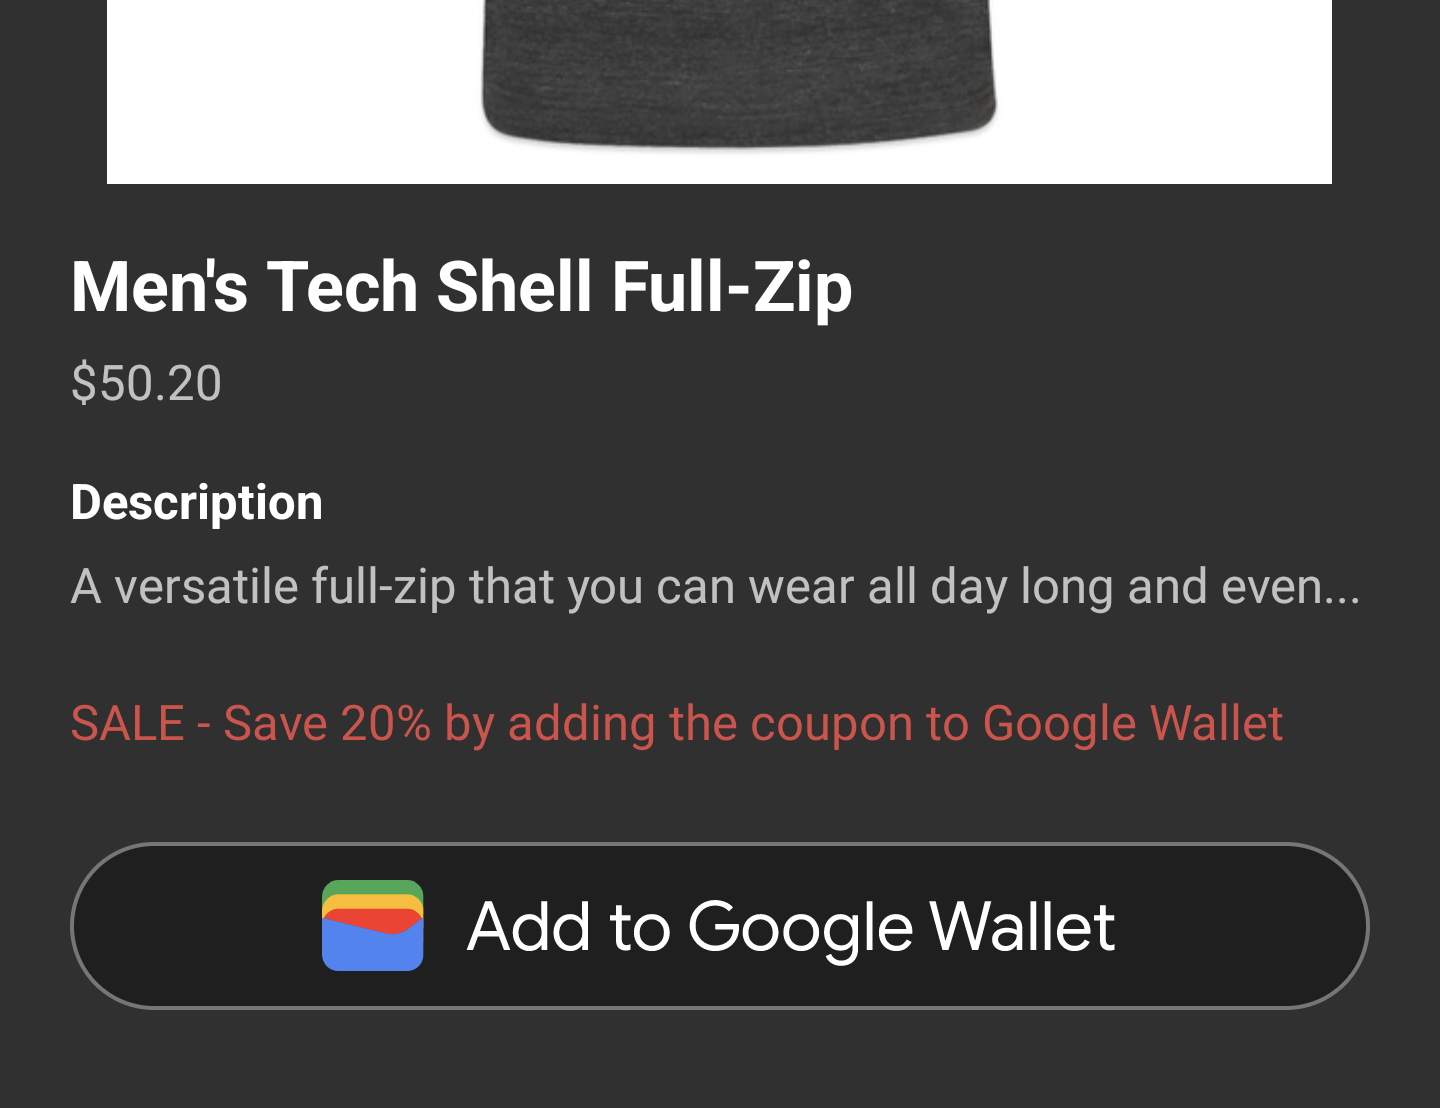 اکنون دکمه افزودن به Google Wallet در فعالیت برنامه ظاهر می شود